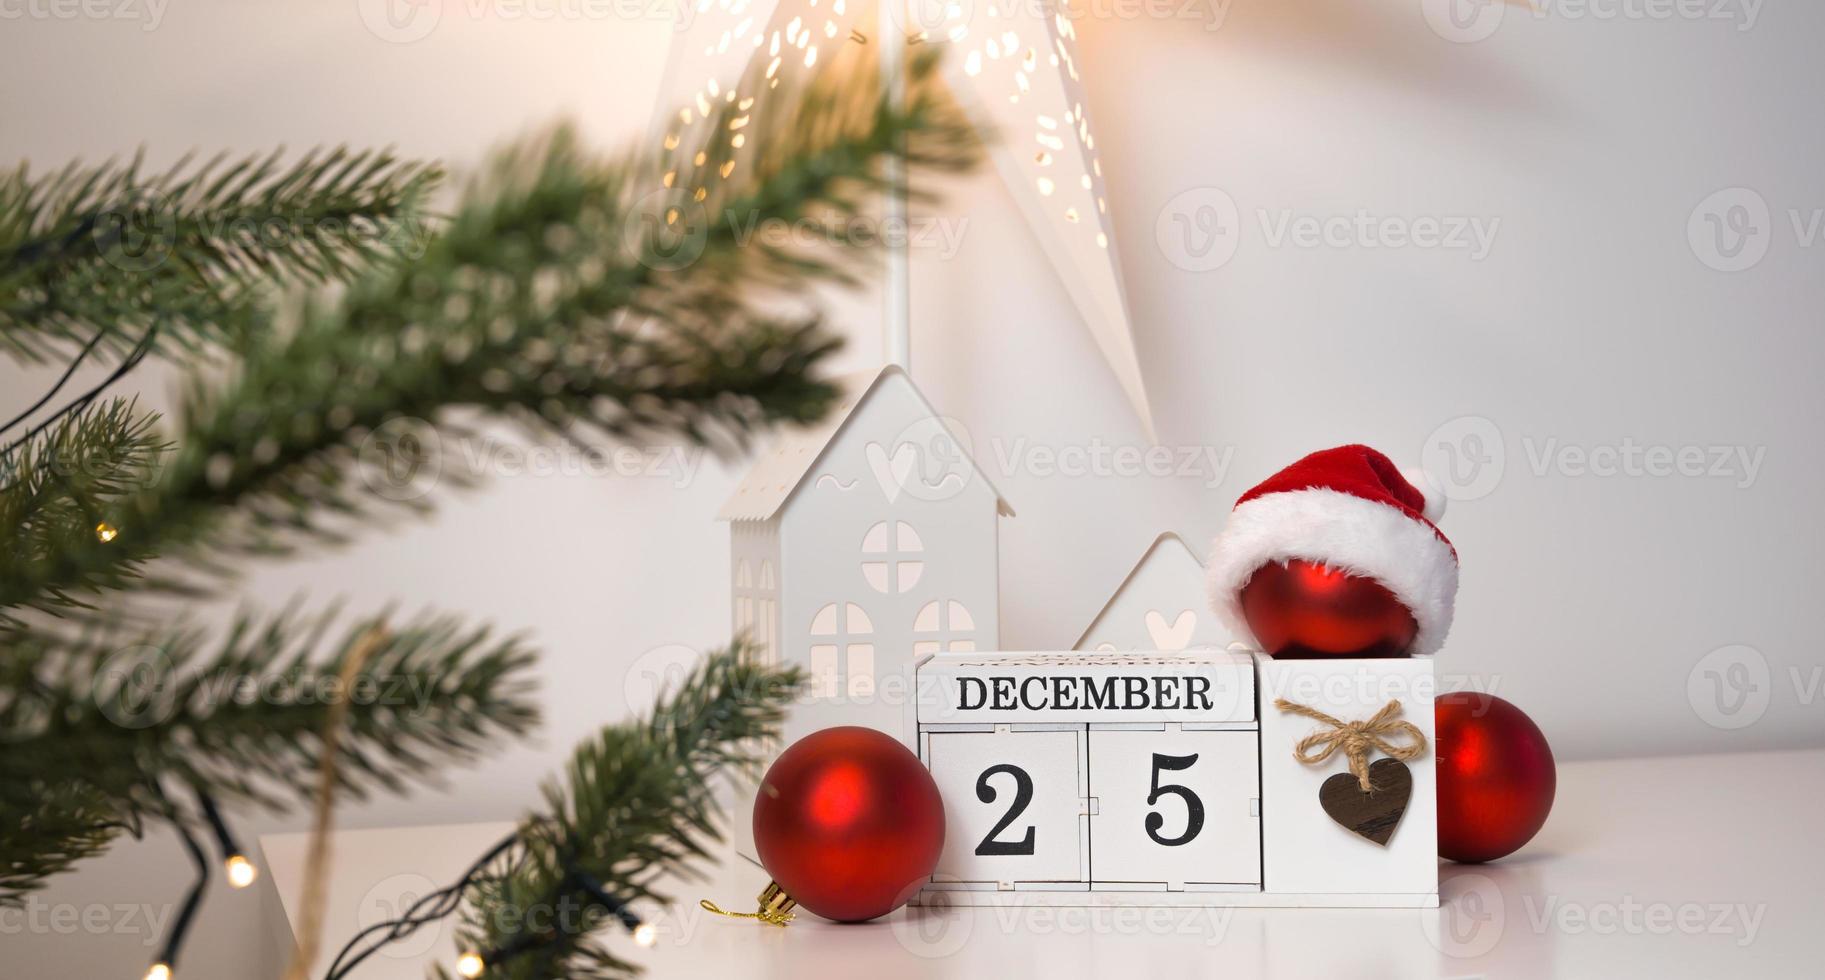 vintage calendario con dicembre 25 Data vicino Natale albero e alcuni rosso ornamenti foto